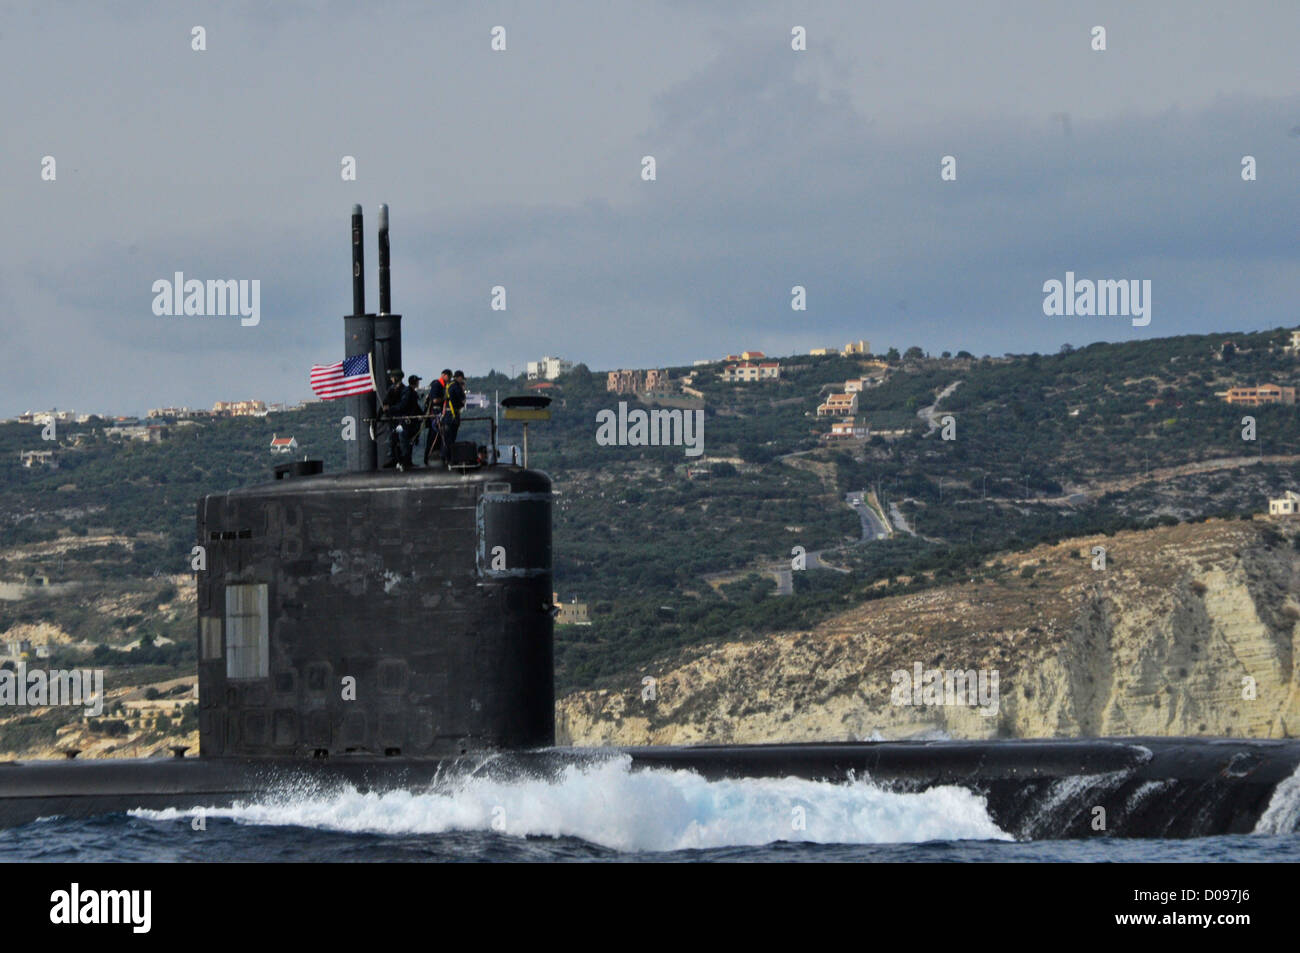 Die Los-Angeles-Klasse schnellen Angriff u-Boot USS Alexandria (SSN-757) fährt folgende geplante Hafen besuchen. Alexandria ist in Groton, Connecticut Gridley und Durchführung von maritimen Sicherheits-Operationen und Sicherheitsbemühungen Zusammenarbeit Theater derzeit im Einsatz Stockfoto